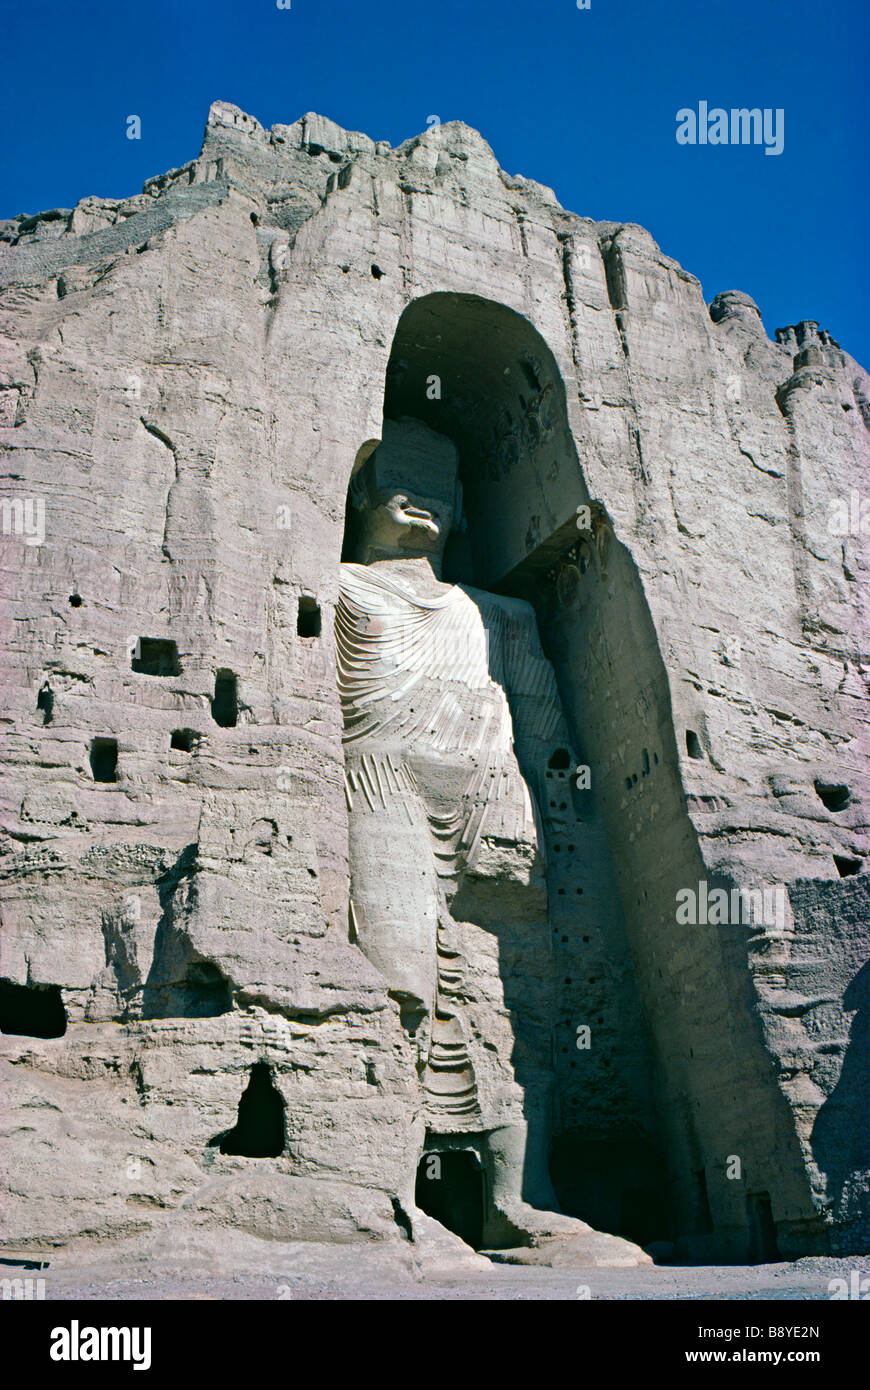 Der größere der beiden riesigen Buddhas von Bamiyan, Afghanistan (erbaut 554), wurde 1974 vor seiner Zerstörung durch die Taliban 2001 gesehen Stockfoto